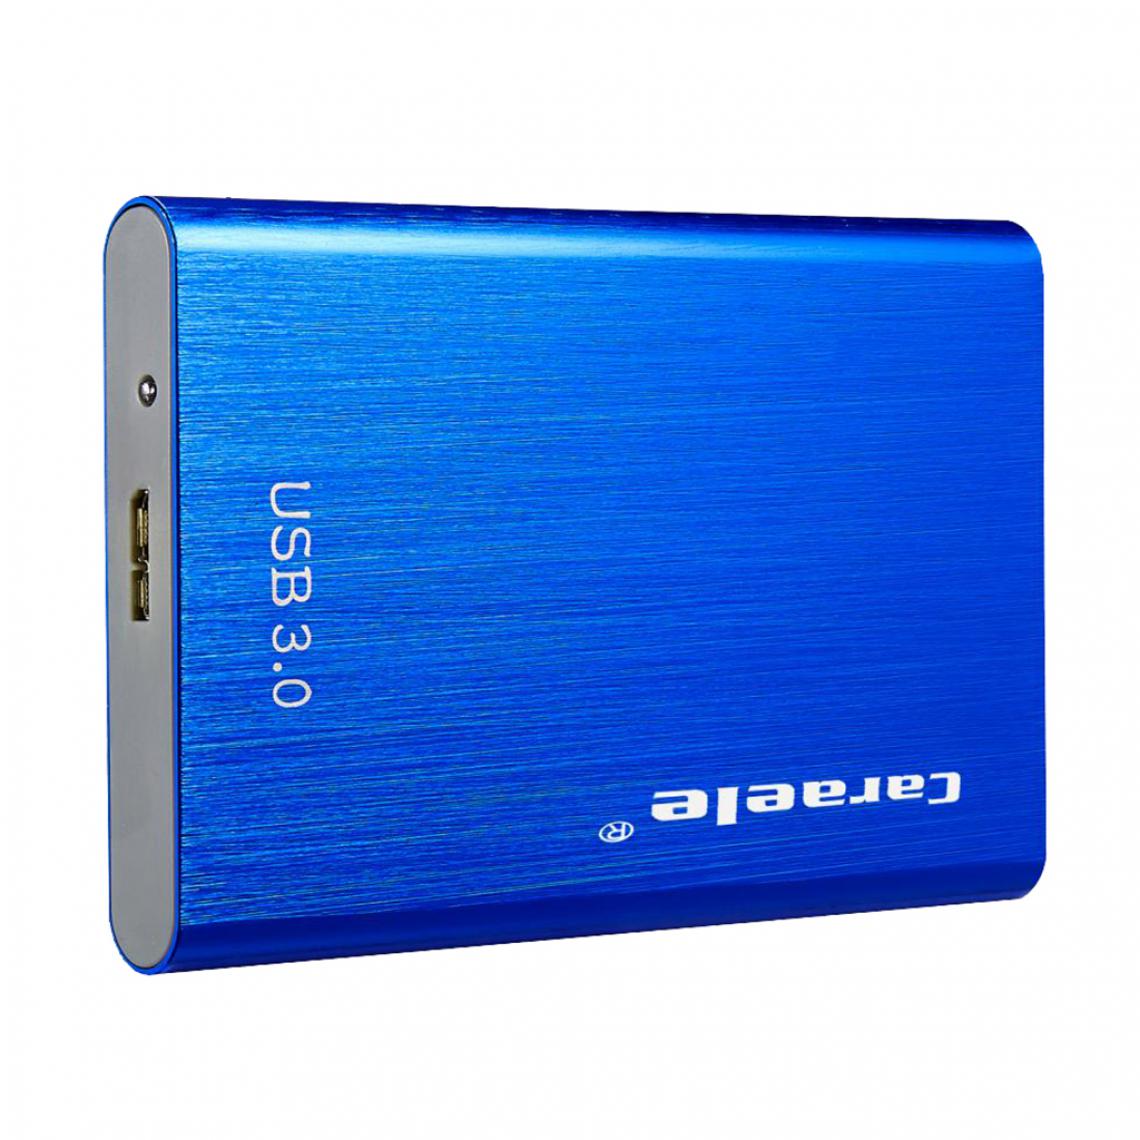 marque generique - Disque dur externe Disque dur Portable Blue 2T - Boitier PC